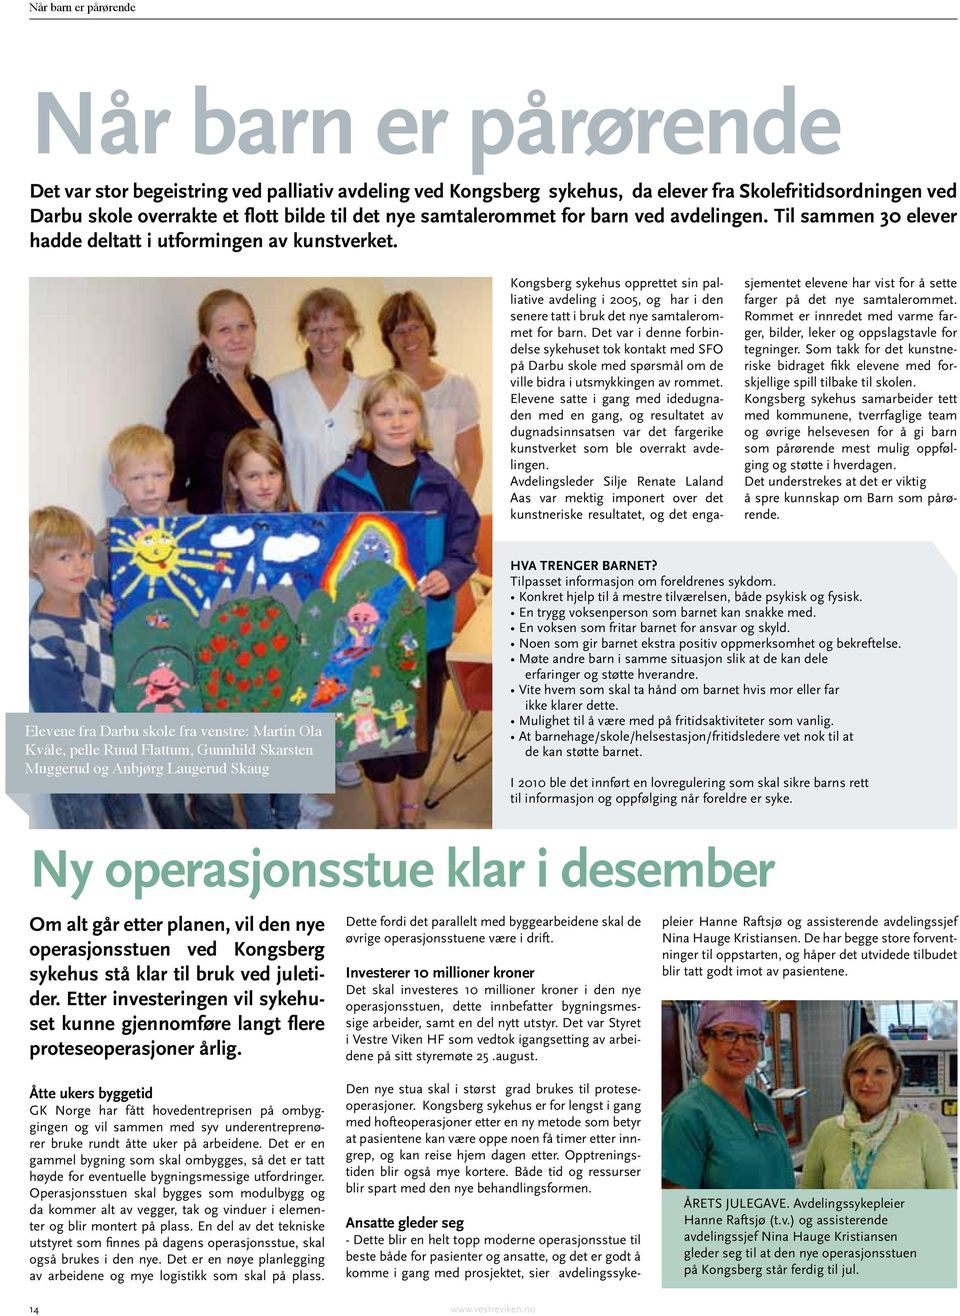 Kongsberg sykehus opprettet sin palliative avdeling i 2005, og har i den senere tatt i bruk det nye samtalerommet for barn.